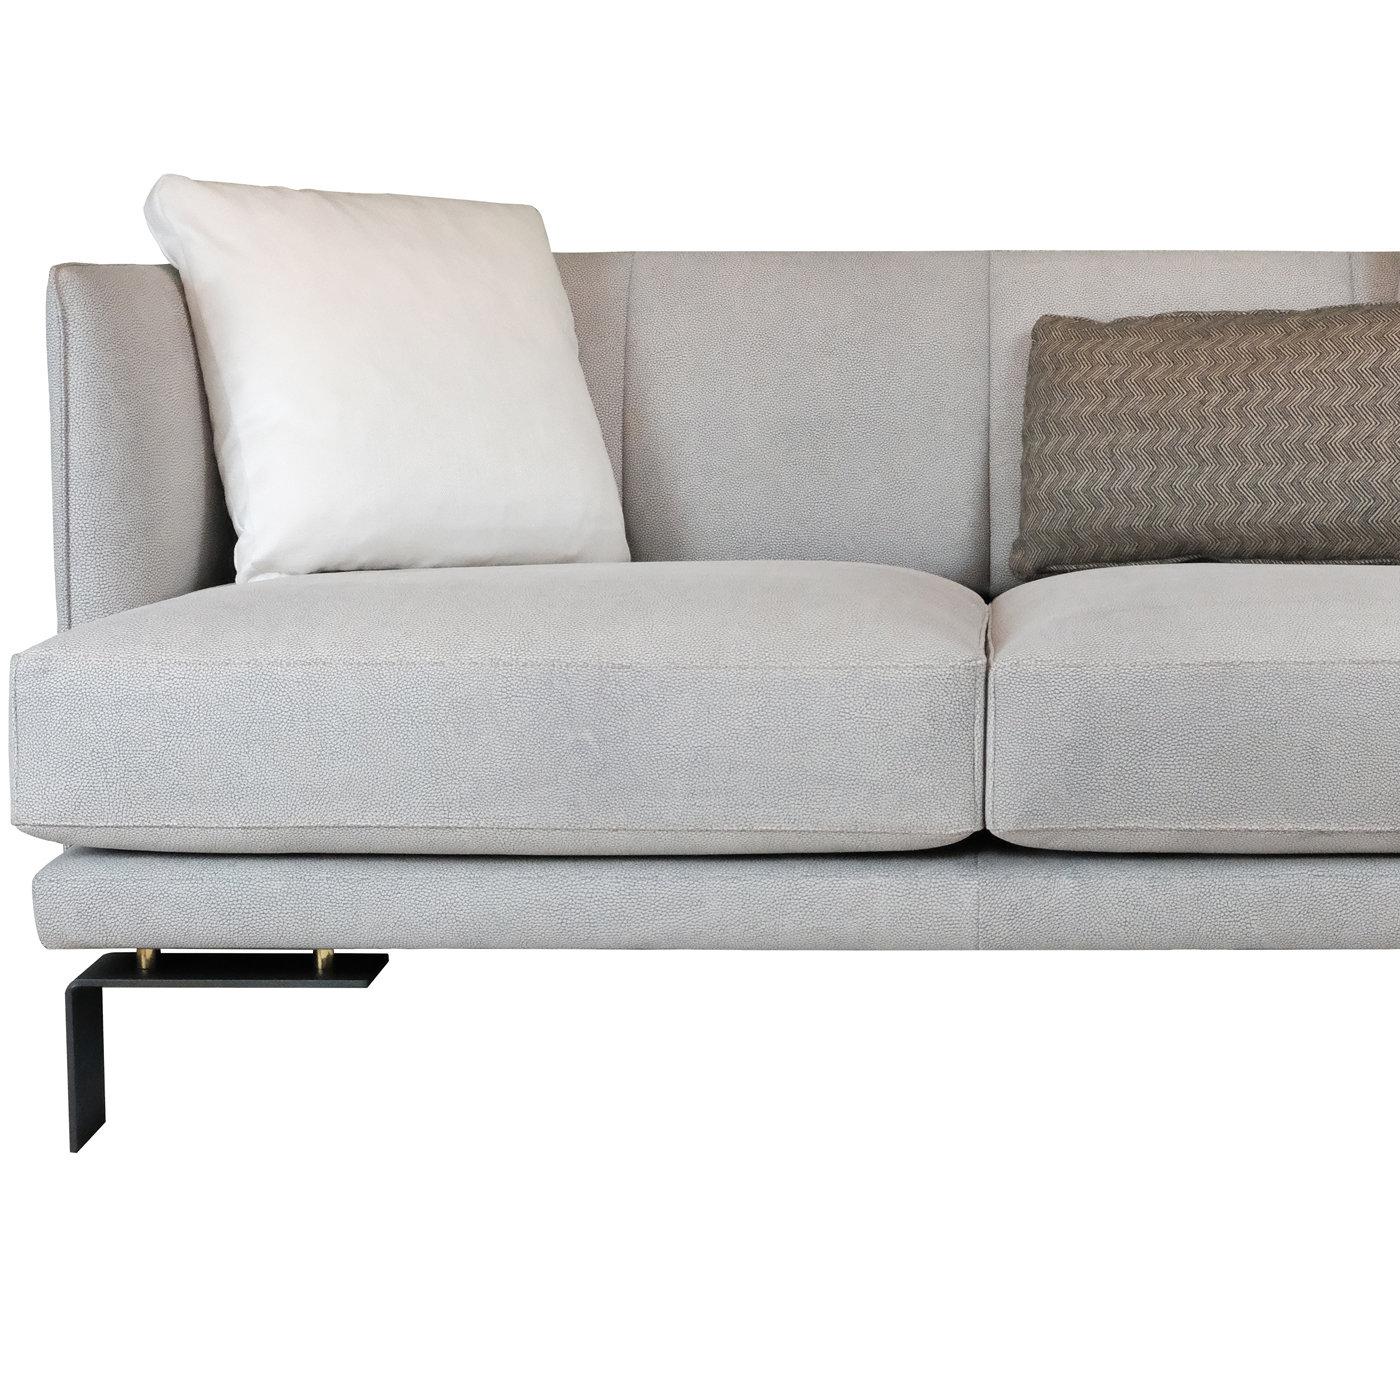 Mit seiner einzigartigen, zeitgenössischen Silhouette ist dieses Sofa eine atemberaubende Ergänzung für jede Einrichtung. Die umarmende Silhouette steht auf anthrazitfarbenen Metallfüßen mit goldenen Details und ruht auf einem mit Gummibändern